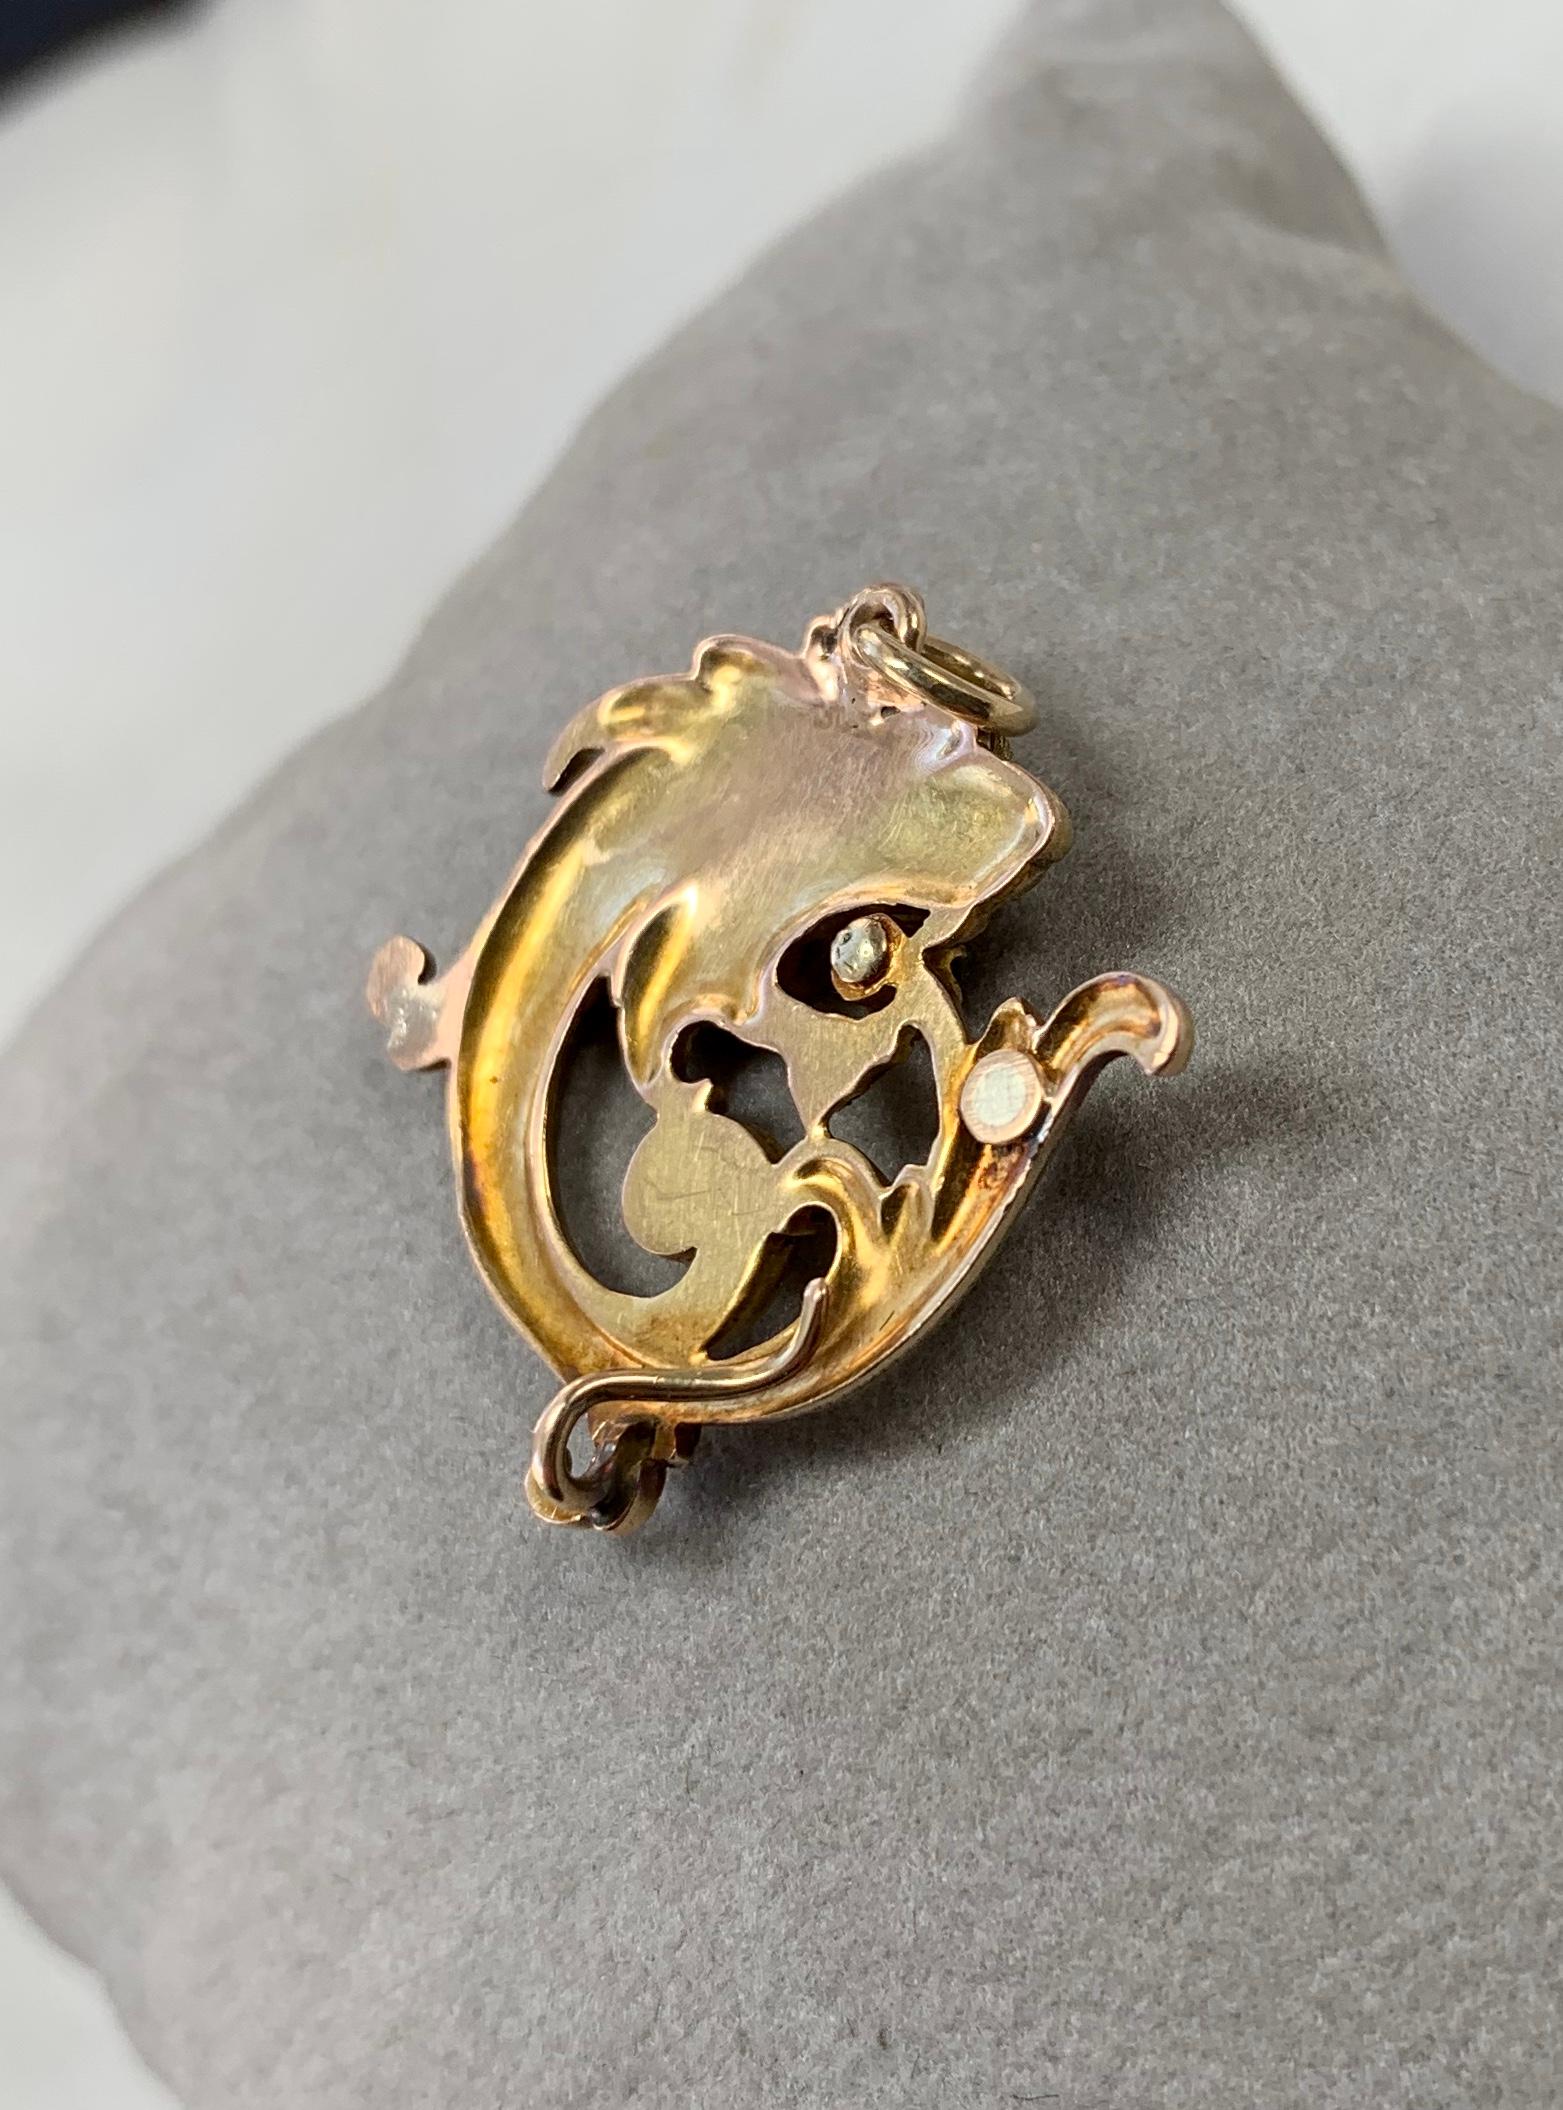 Griffin Dragon Garnet Pendant Necklace Antique Belle Epoque 14 Karat Gold 1